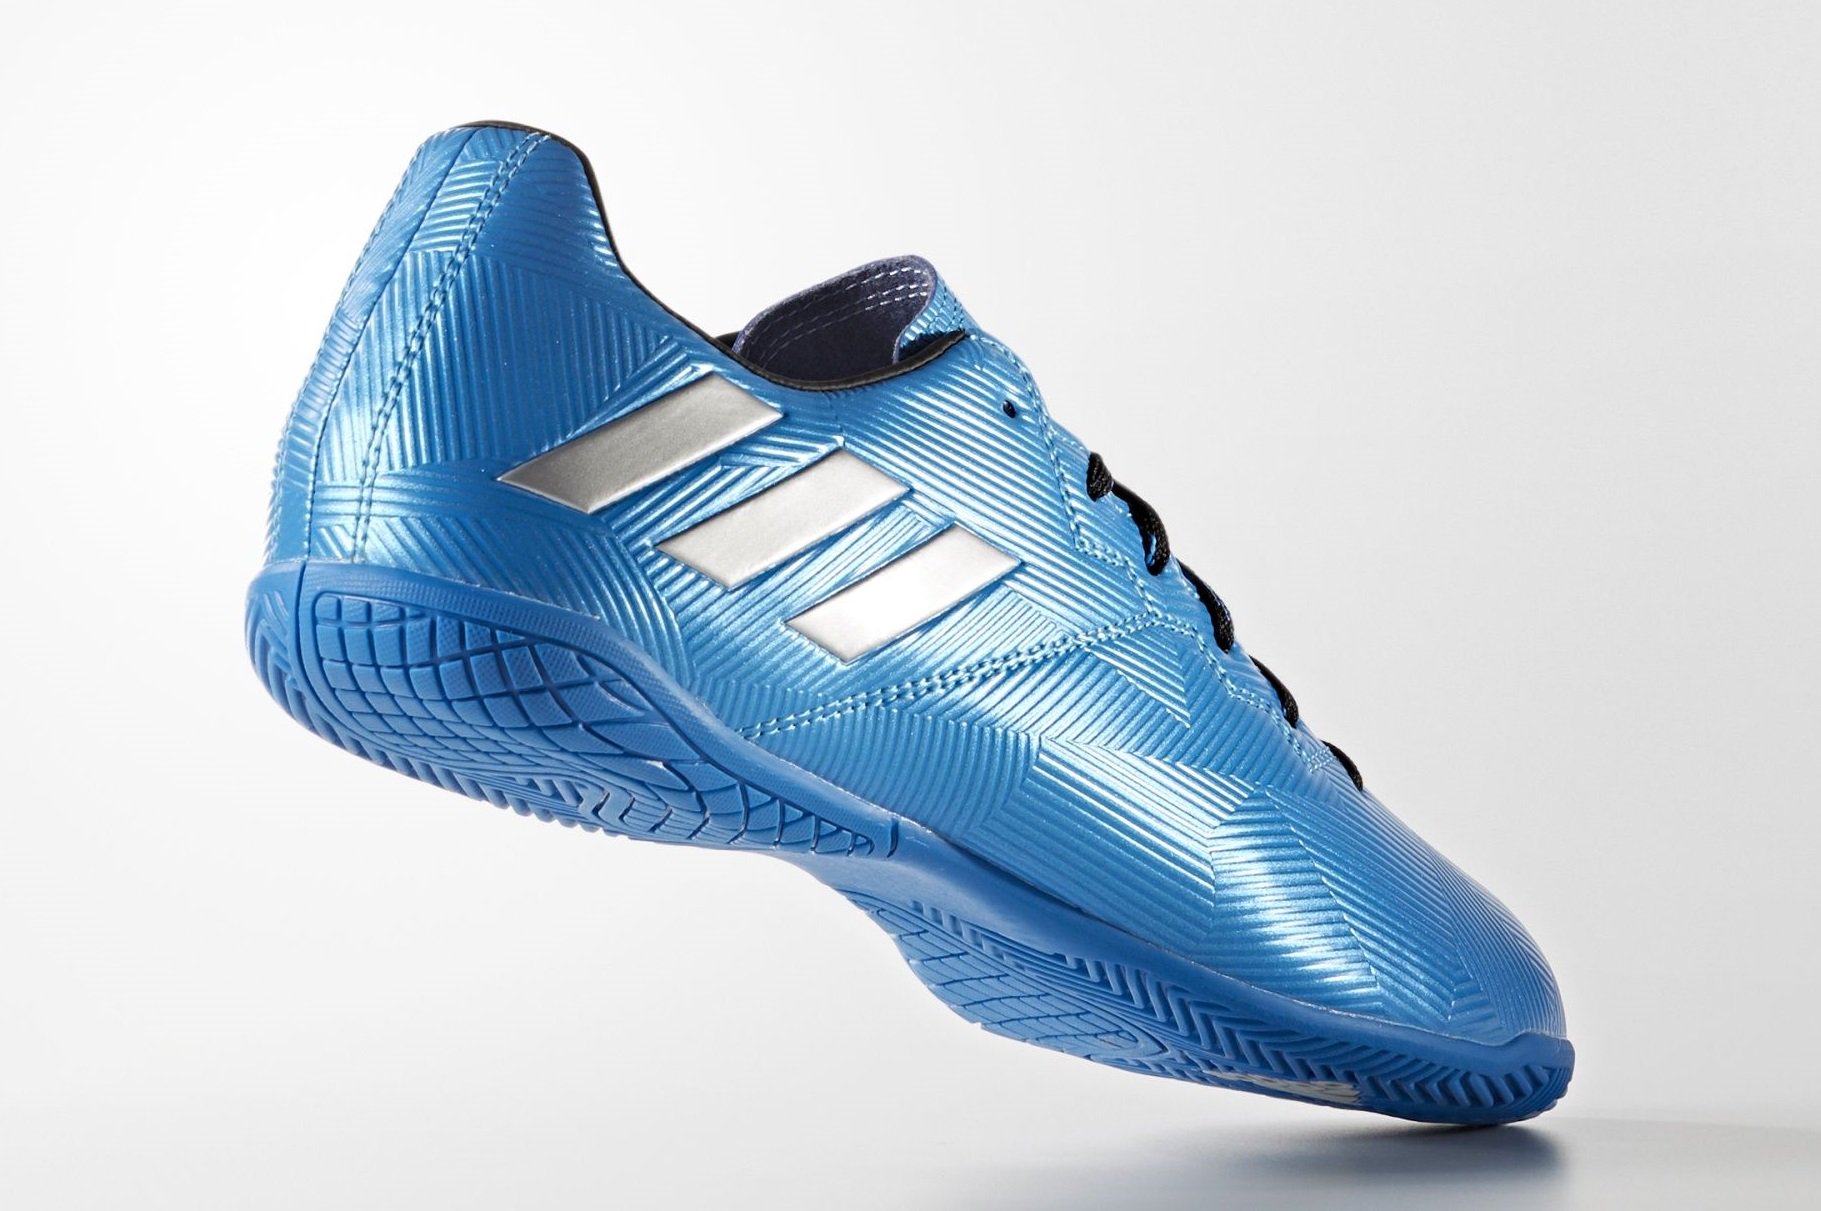 Smeren Londen Haiku Boot Cleat on Twitter: "Adidas Messi 16.4 Indoor 16-17 Blue Shoes #adidas # indoor https://t.co/JFhxfZM2iX https://t.co/CQXL8OCFU0" / Twitter